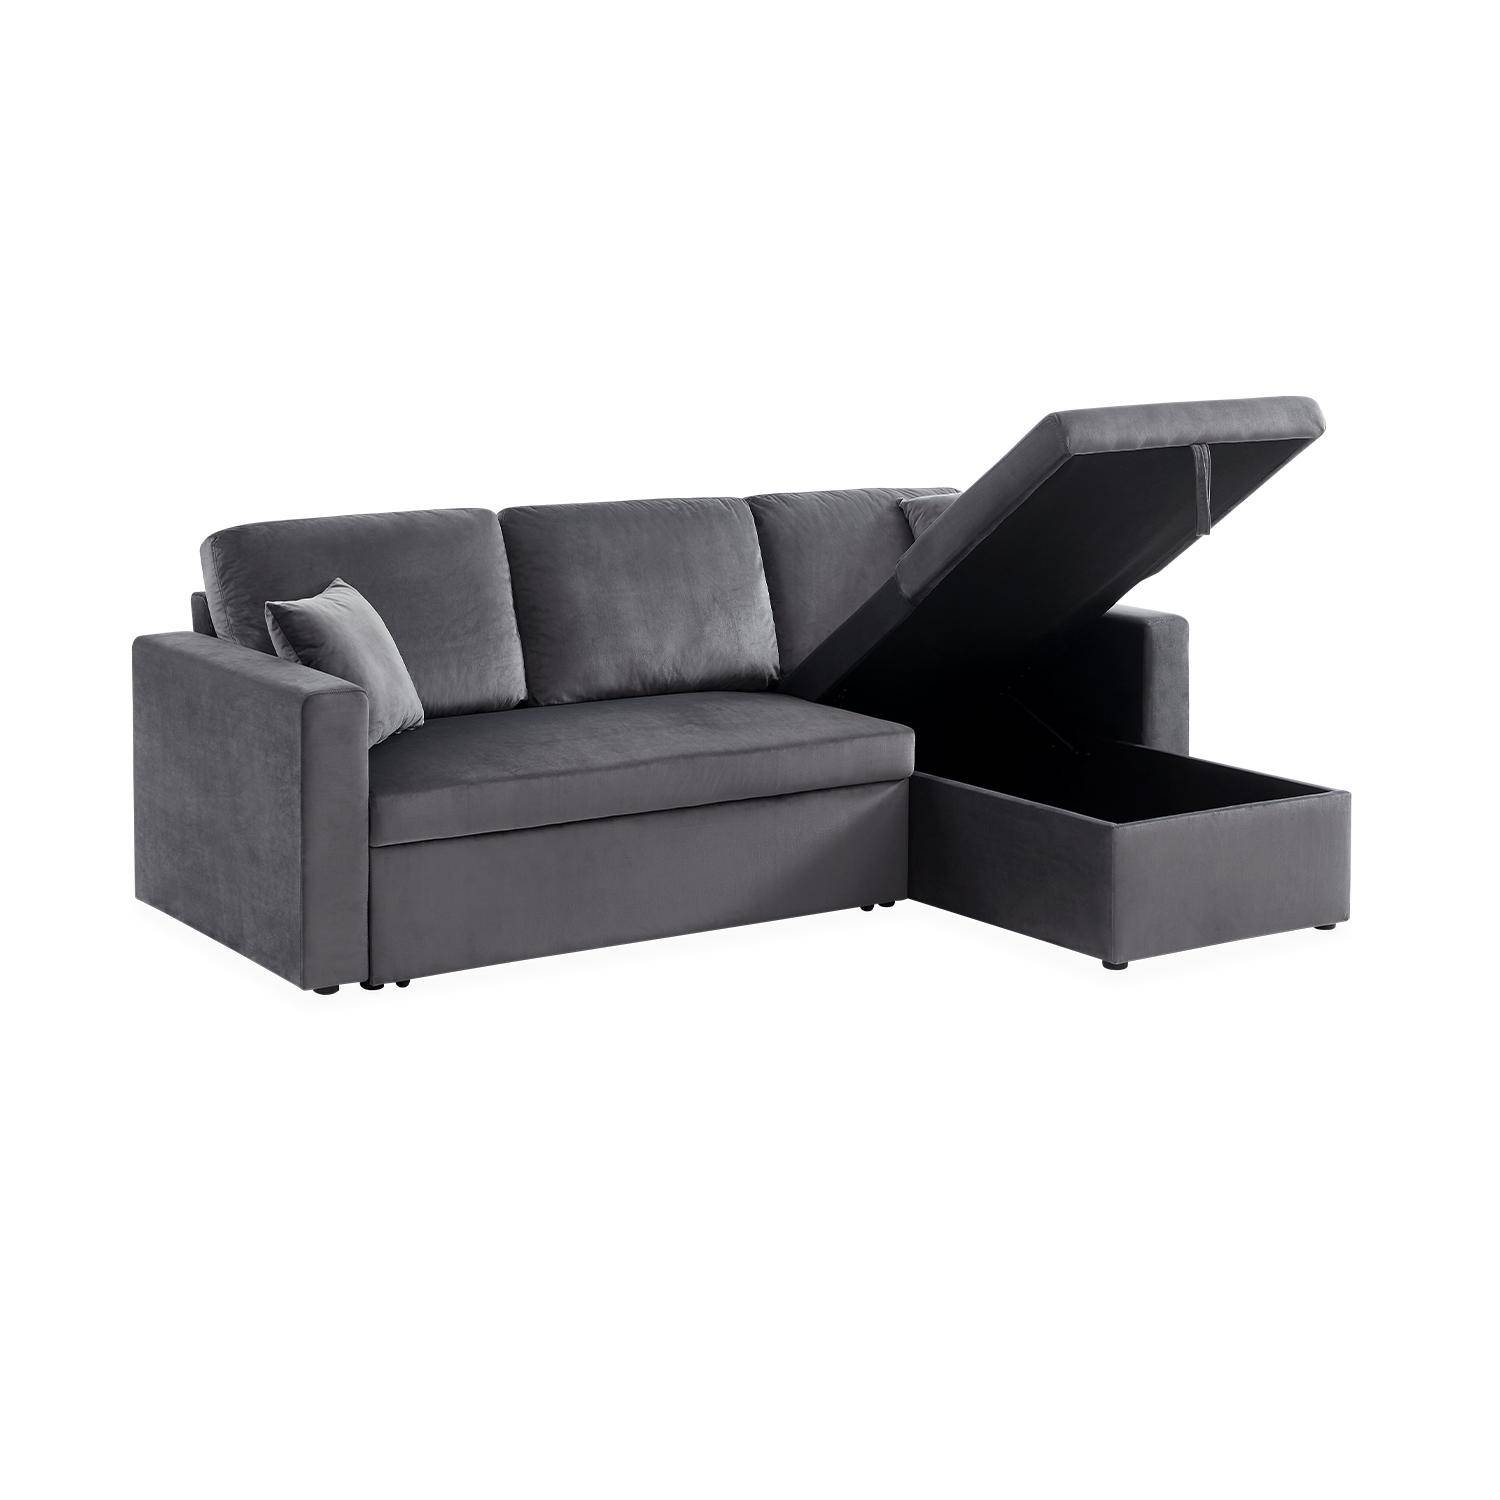 Sofá esquinero convertible de 3 plazas de terciopelo gris oscuro, sillón esquinero reversible, caja de almacenaje, cama modular,sweeek,Photo5